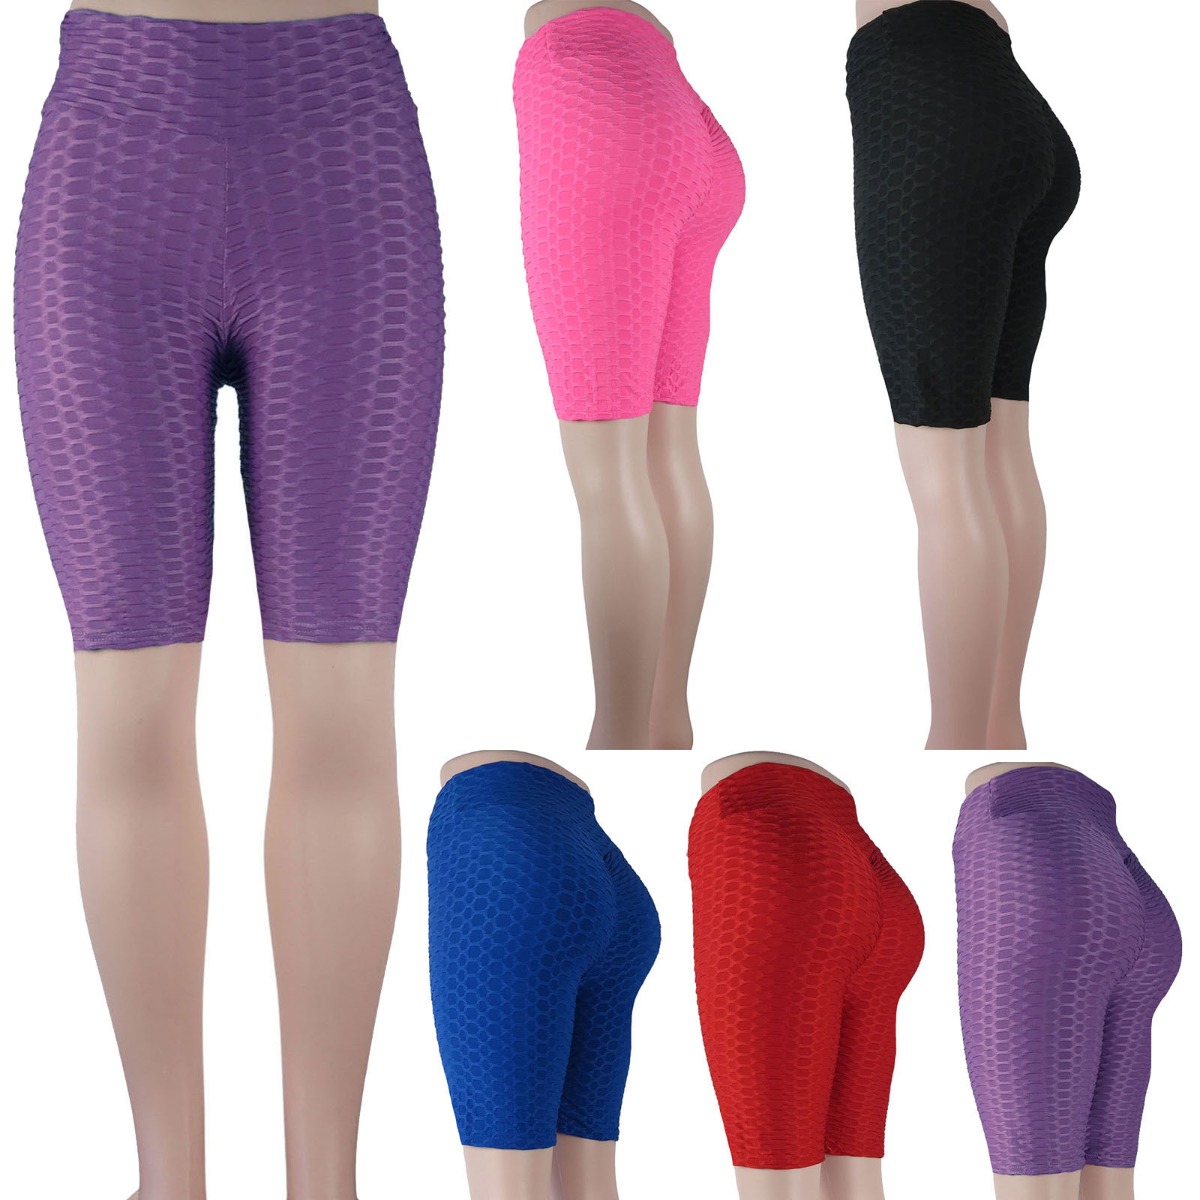 Women's Anti-Cellulite Honeycomb Textured Scrunch Butt BIKER Shorts - Assorted Colors